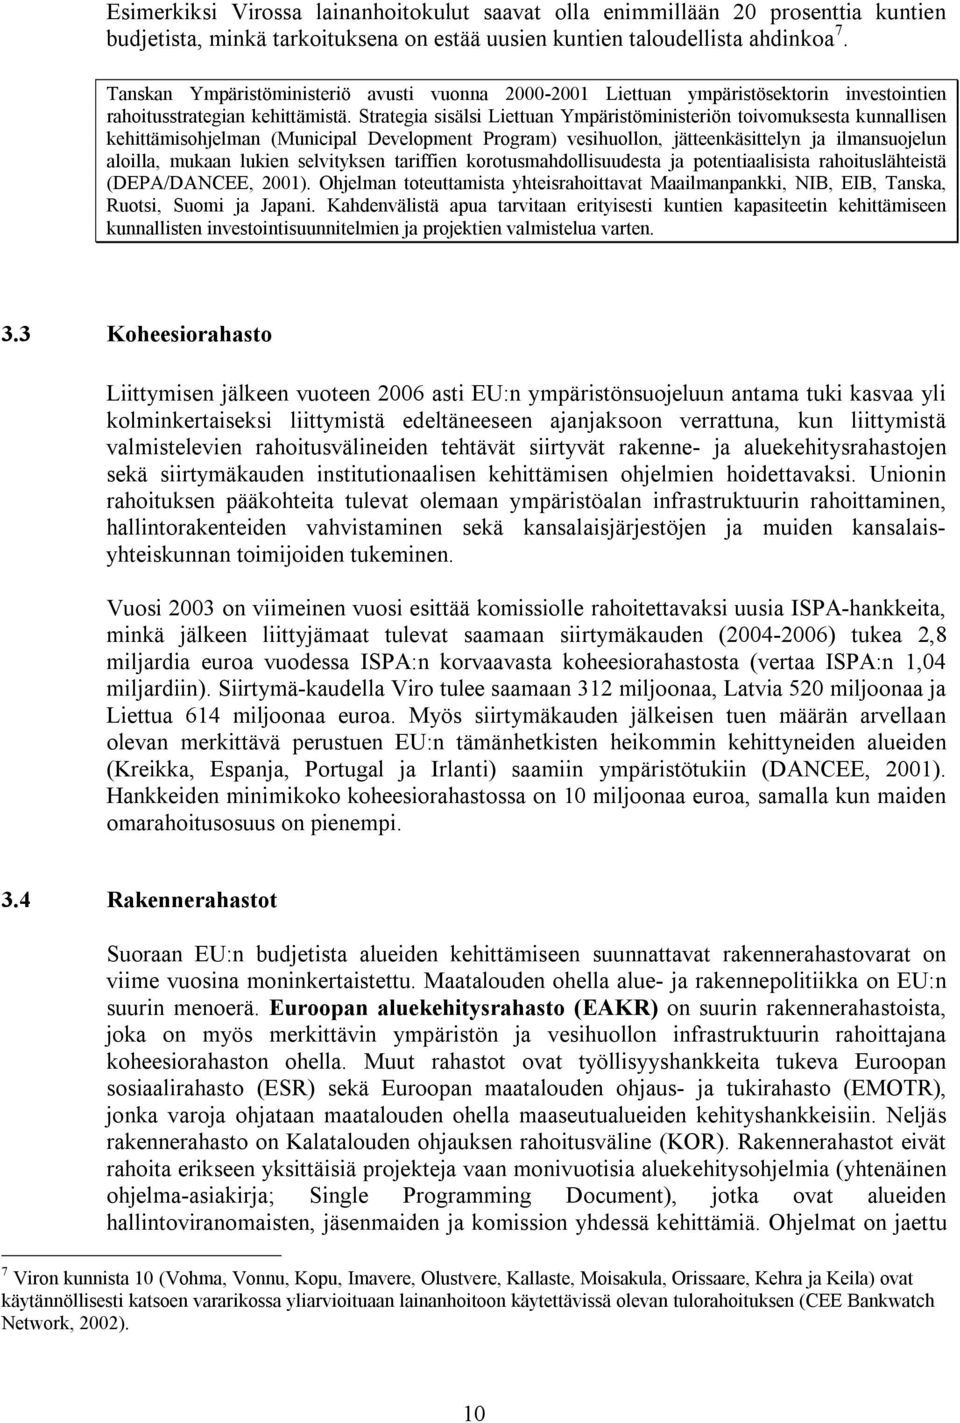 Strategia sisälsi Liettuan Ympäristöministeriön toivomuksesta kunnallisen kehittämisohjelman (Municipal Development Program) vesihuollon, jätteenkäsittelyn ja ilmansuojelun aloilla, mukaan lukien